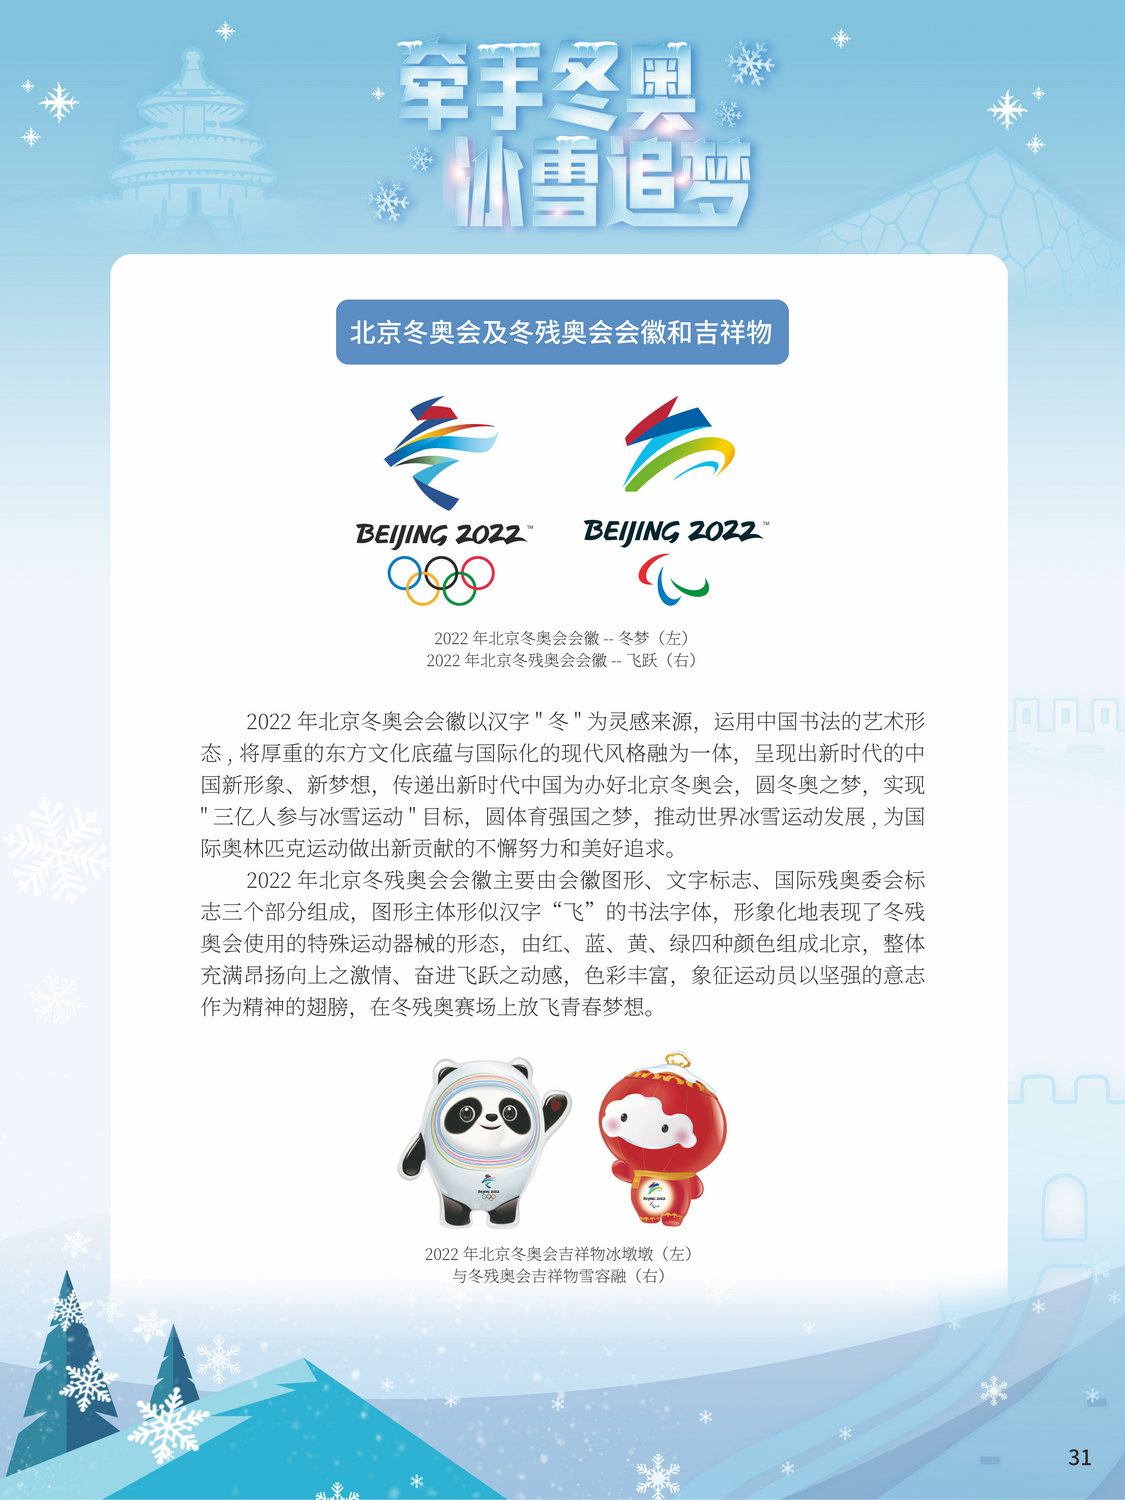 2022北京冬奥巡礼_图31